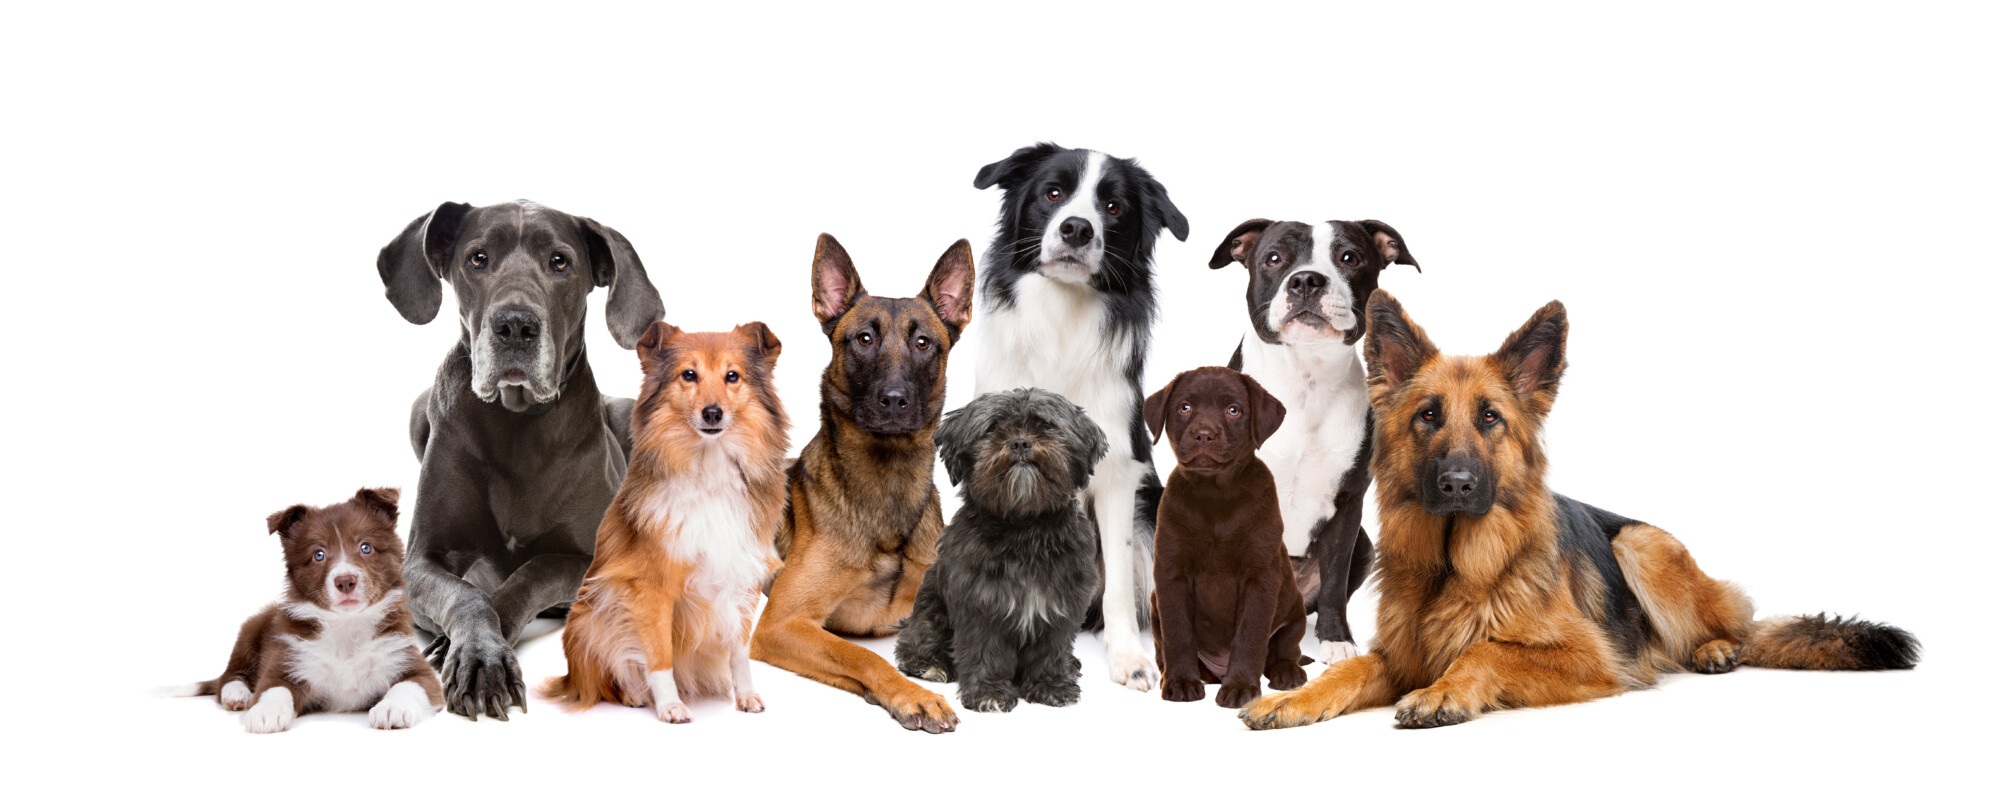 Dogdit.com รวมโรงแรมรีสอร์ทสุนัขพักได้ บรีดเดอร์ผู้เพาะเลี้ยงสุนัข ฟาร์มสุนัข คลีนิคโรงพยาบาลสัตวแพทย์ ร้านอุปกรณ์ สินค้า สัตว์เลี้ยง ซื้อขายสุนัข ค้นหาได้ 77 จังหวัดทั่วไทย.